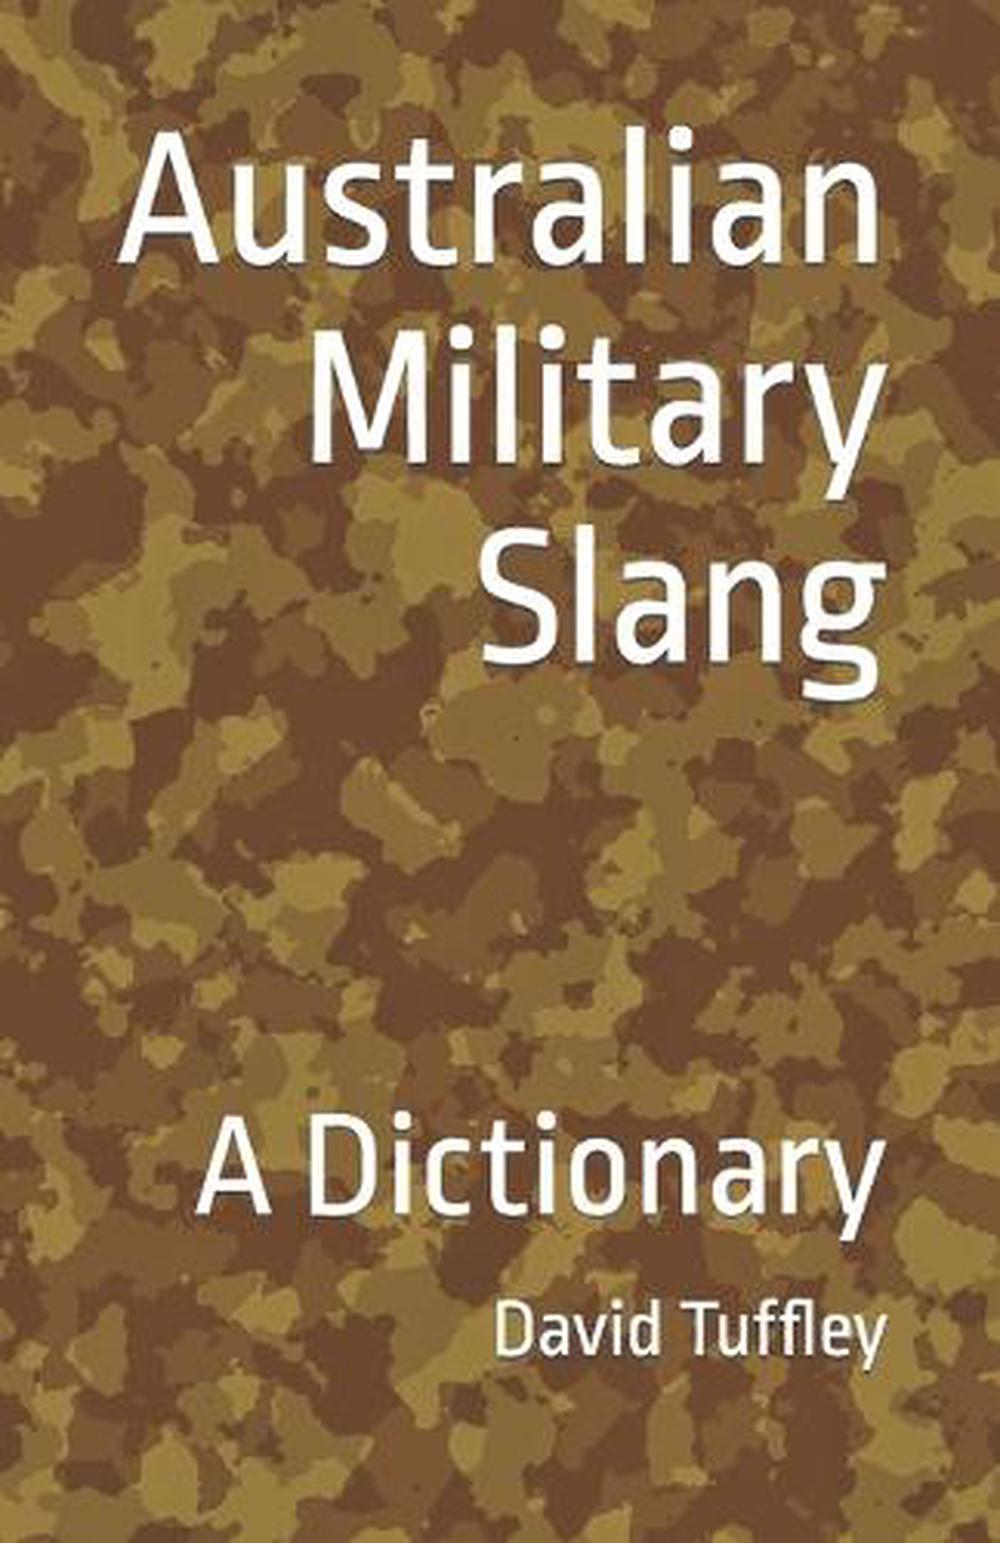 military dictionaries